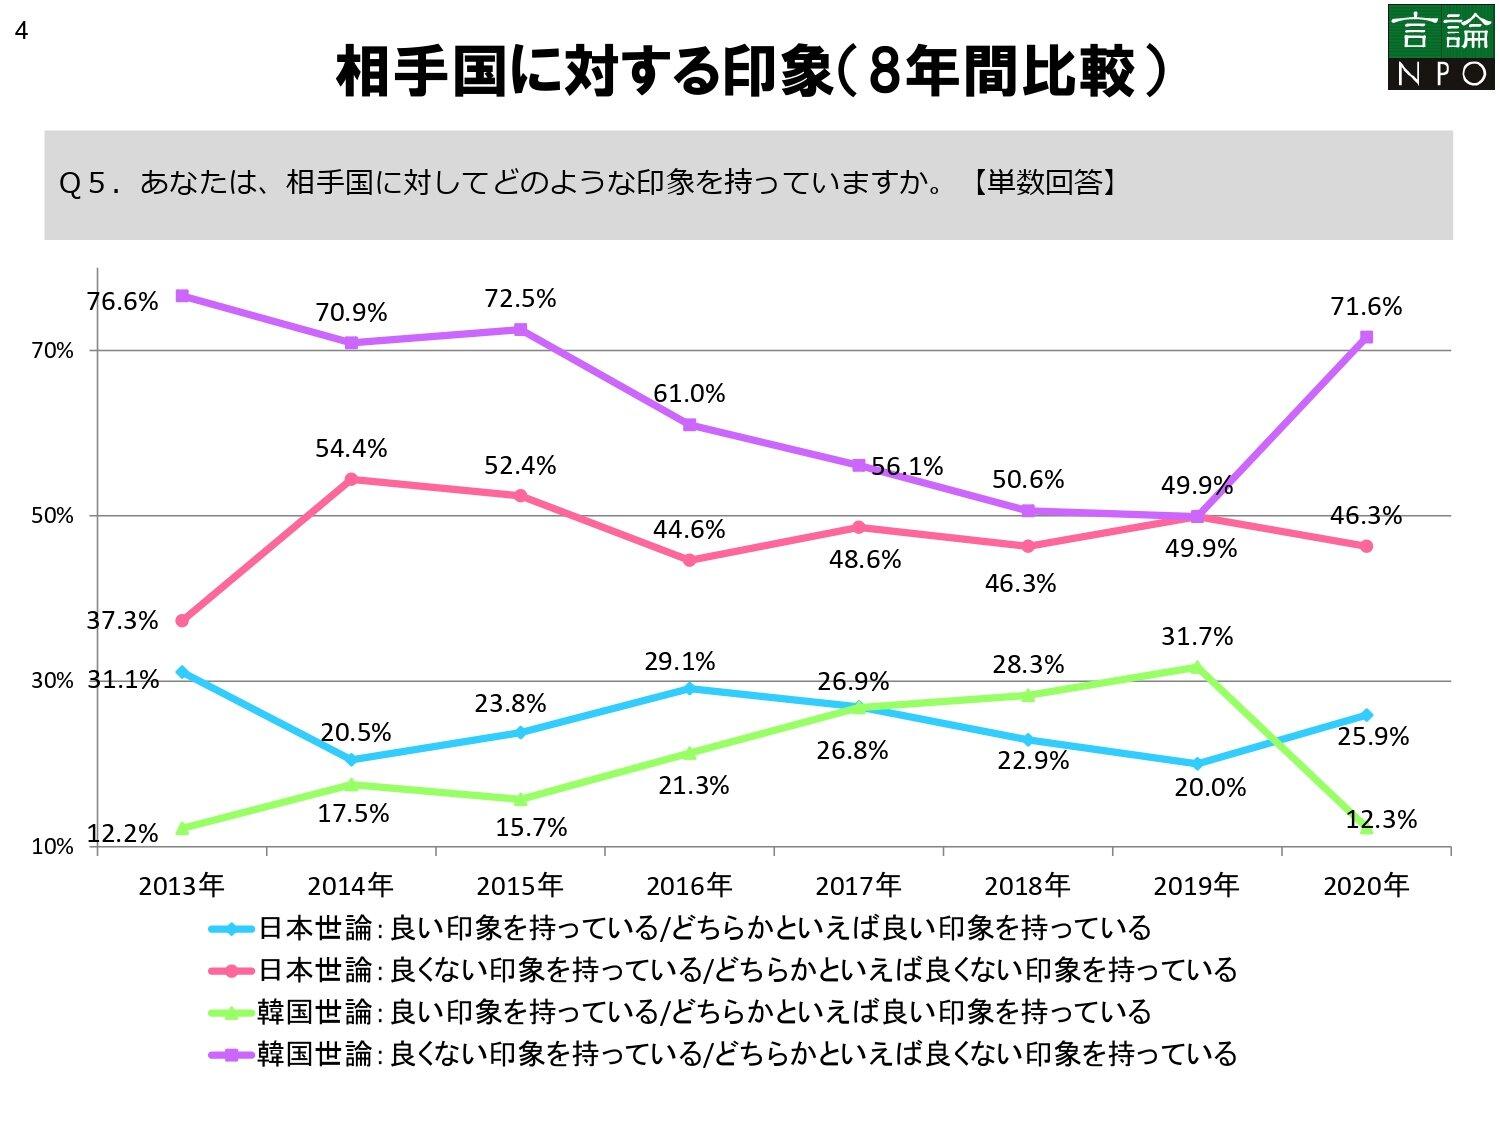 韓国、日本への「良くないイメージ」20ポイント以上の増　対する日本側は「諦め」ムード？